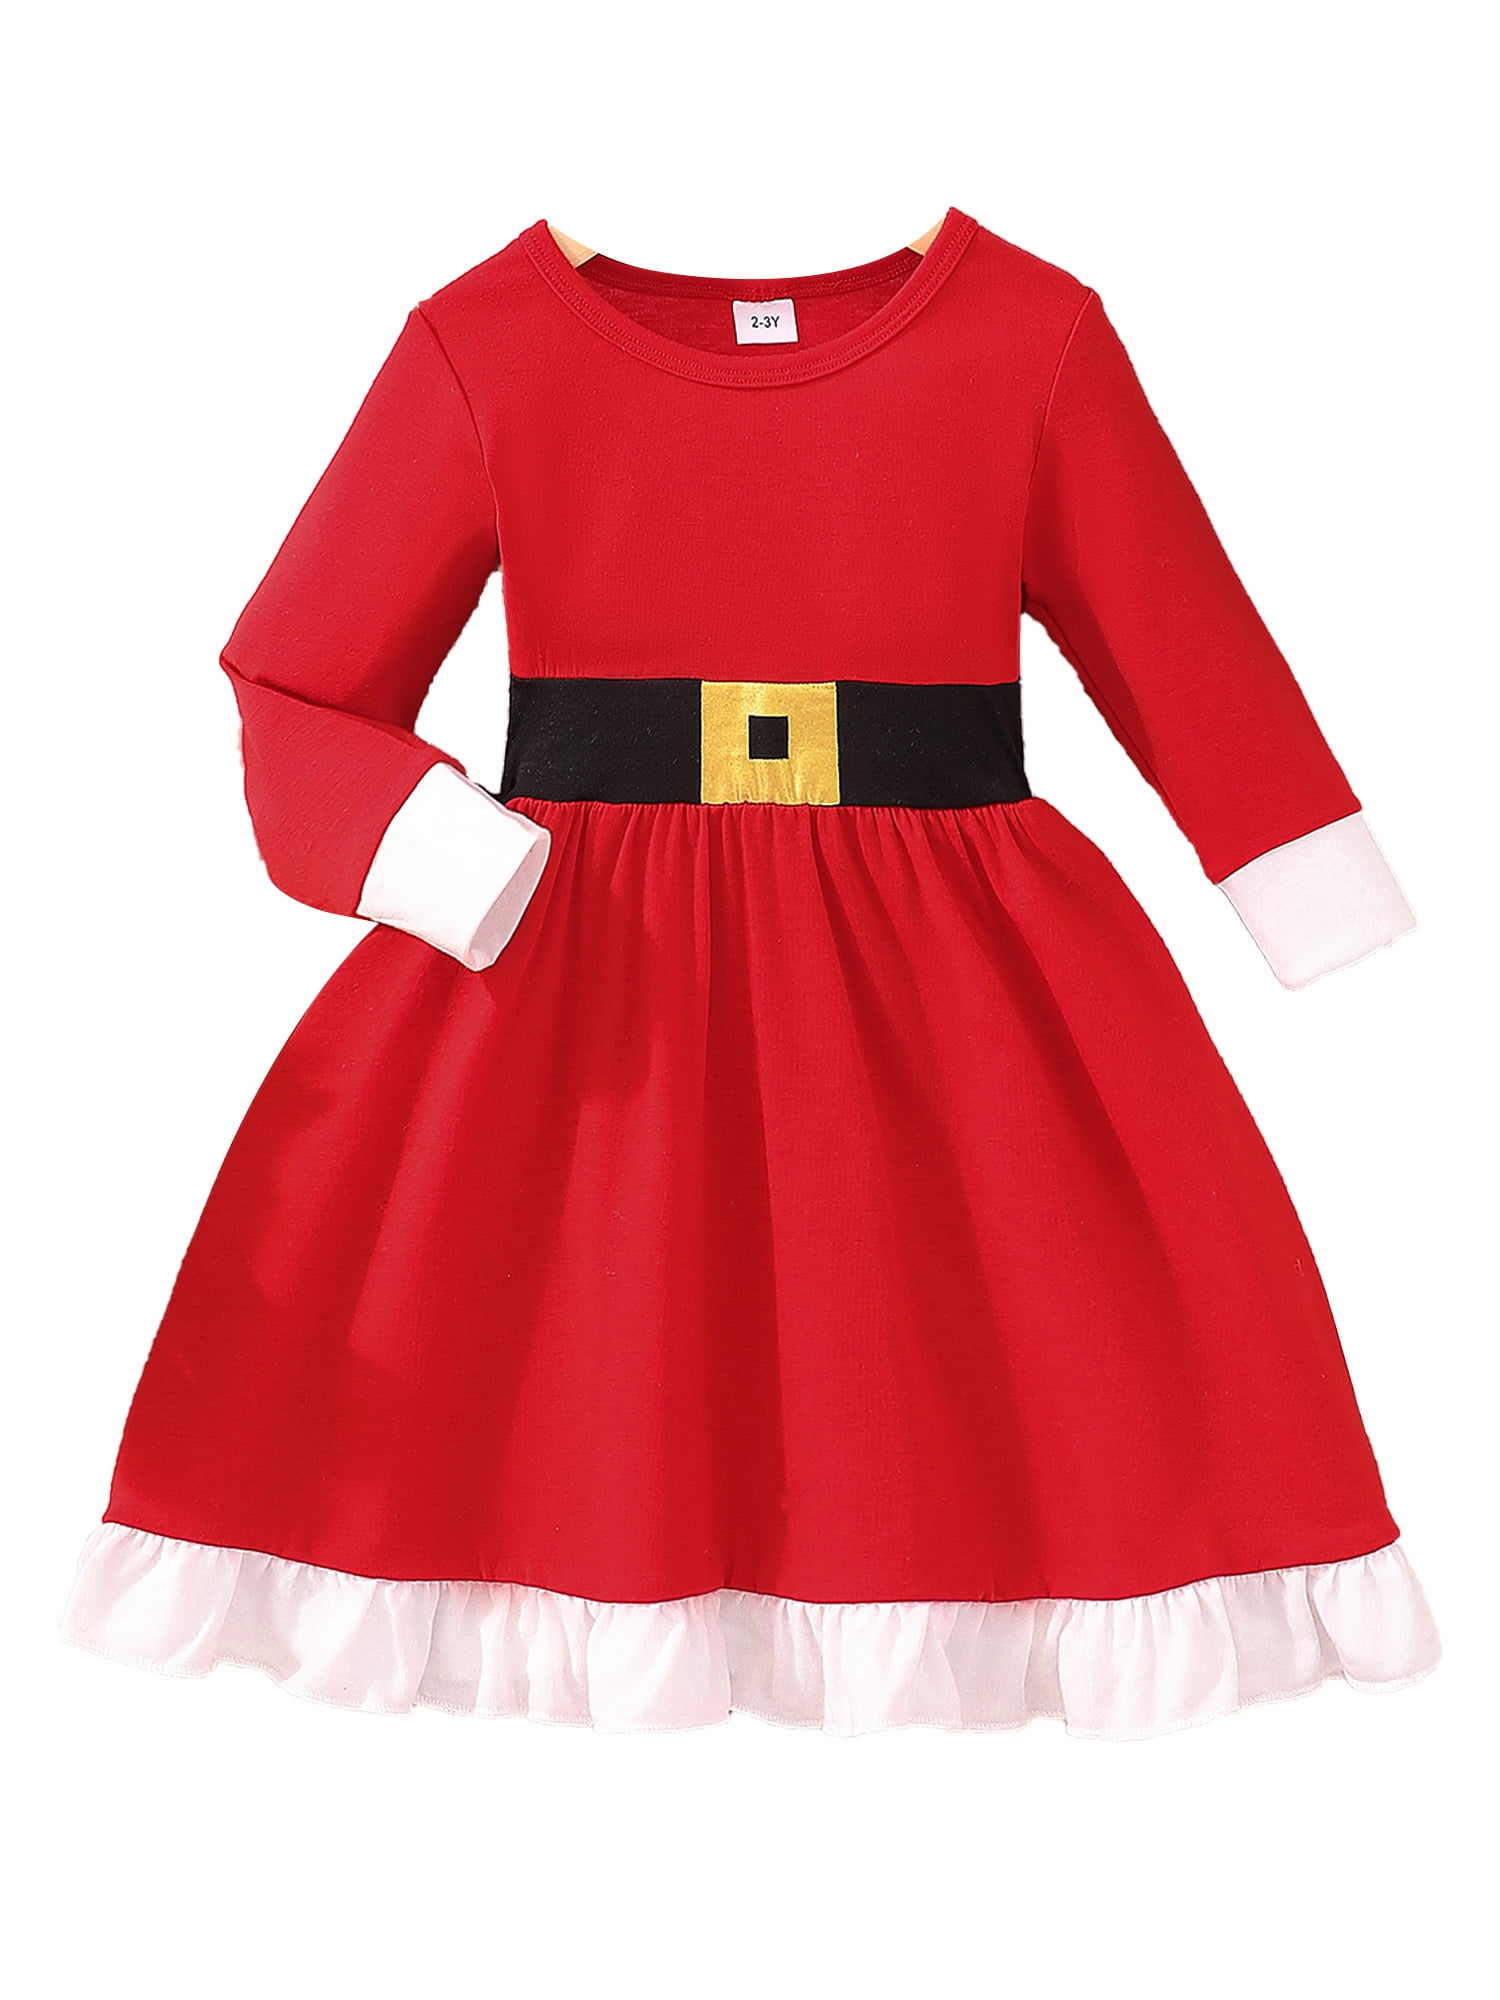 GXFC Little Girls Christmas Princess Dress Clothes 2 3 4 5 6 7T Kids ...